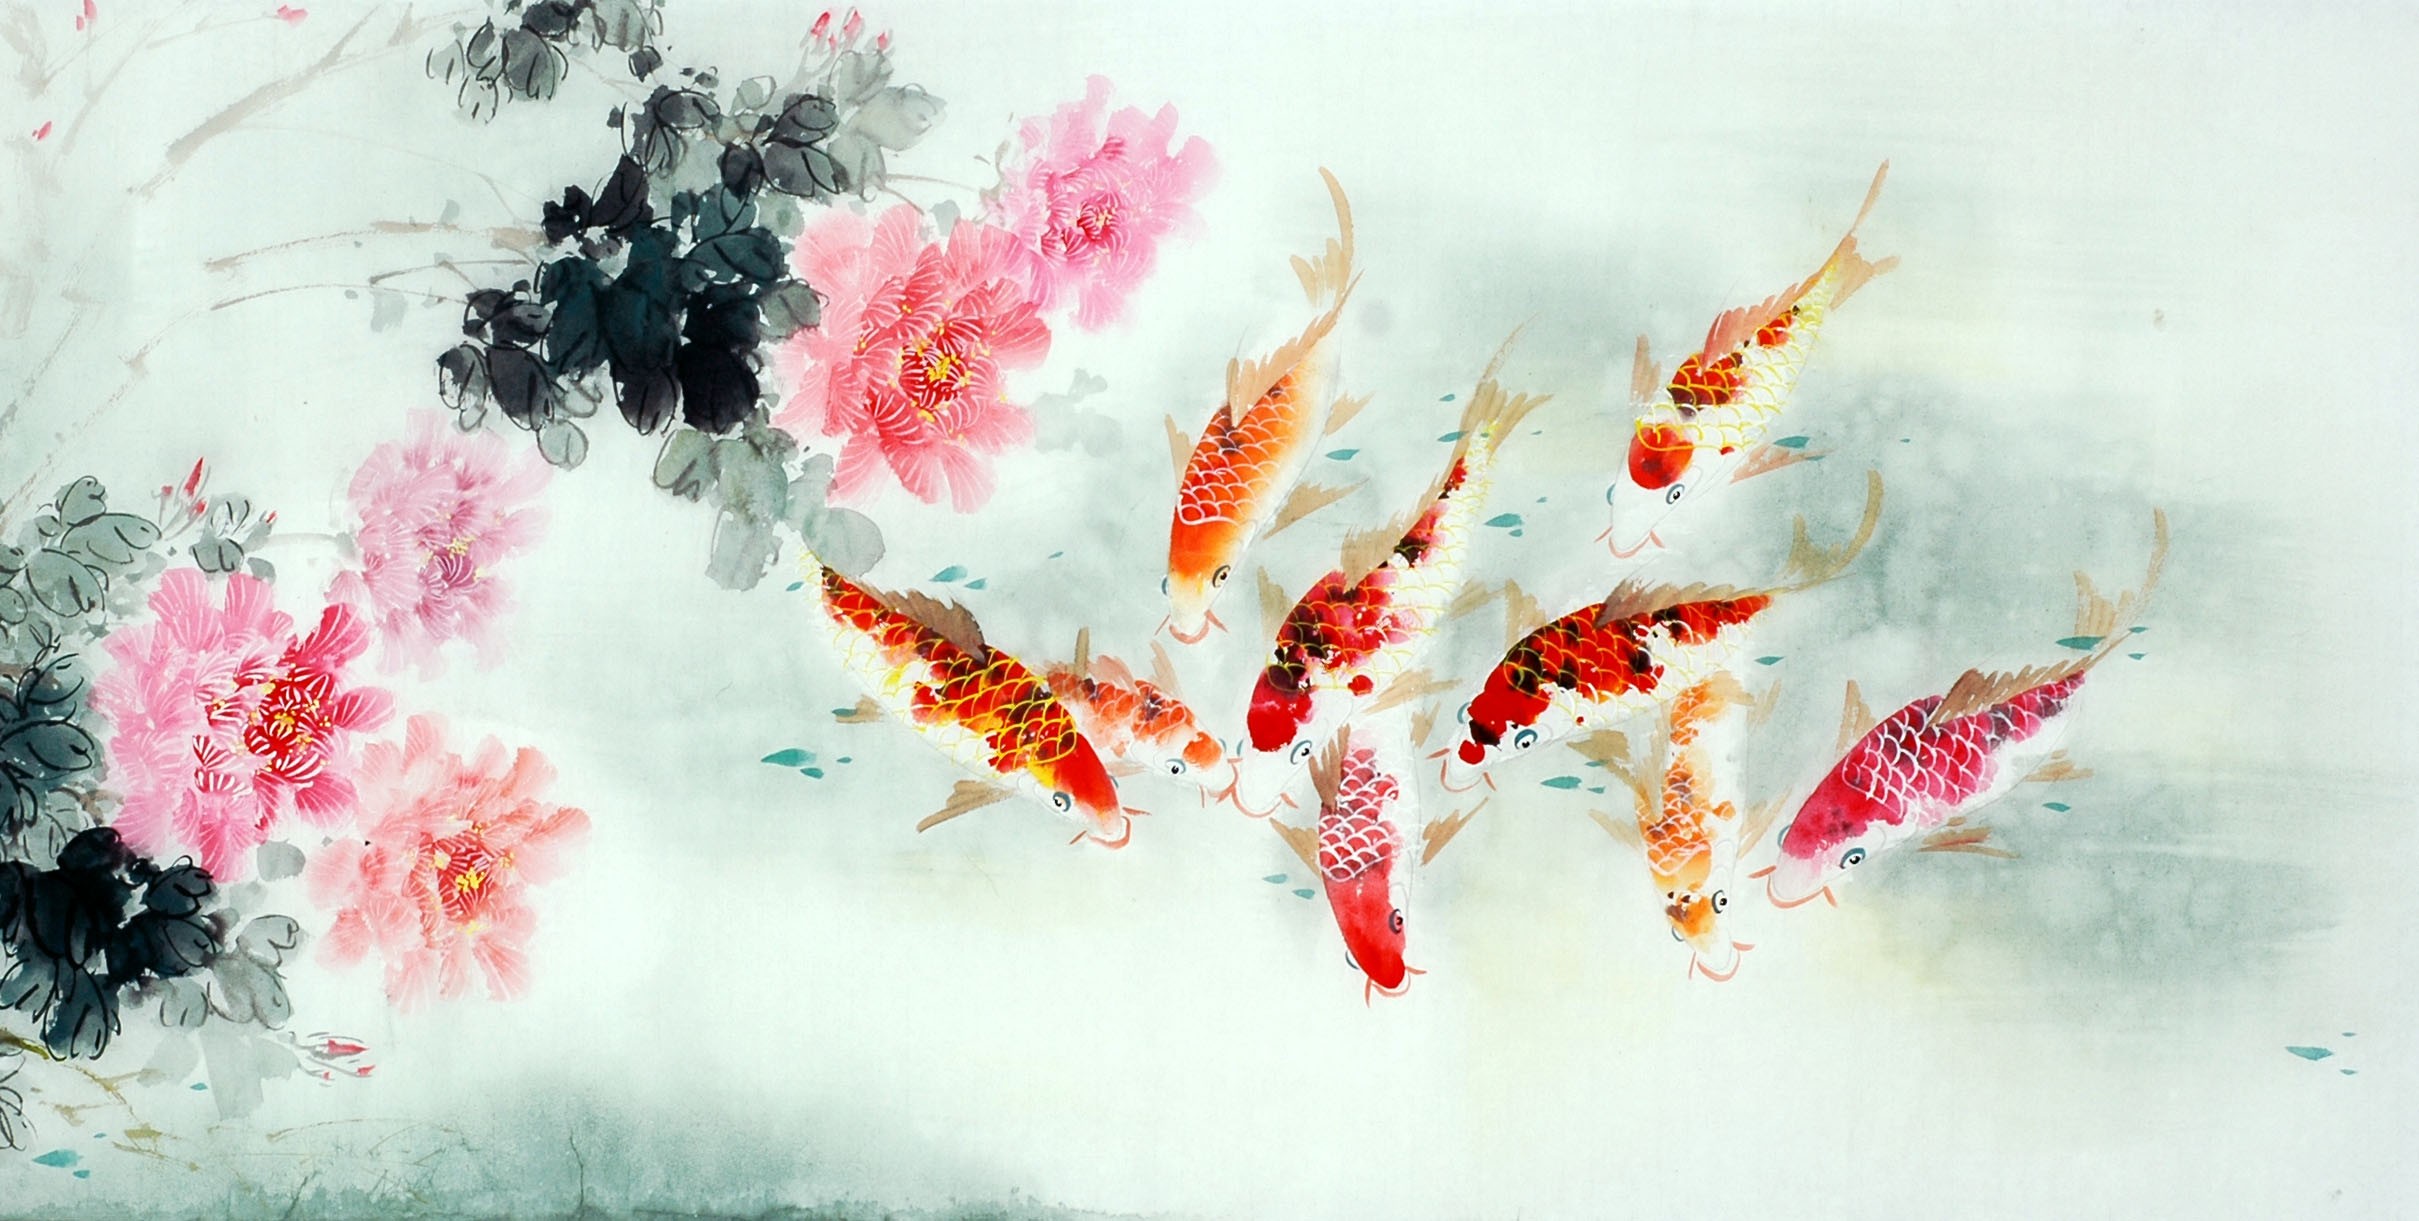 Chinese Carp Painting - CNAG011407